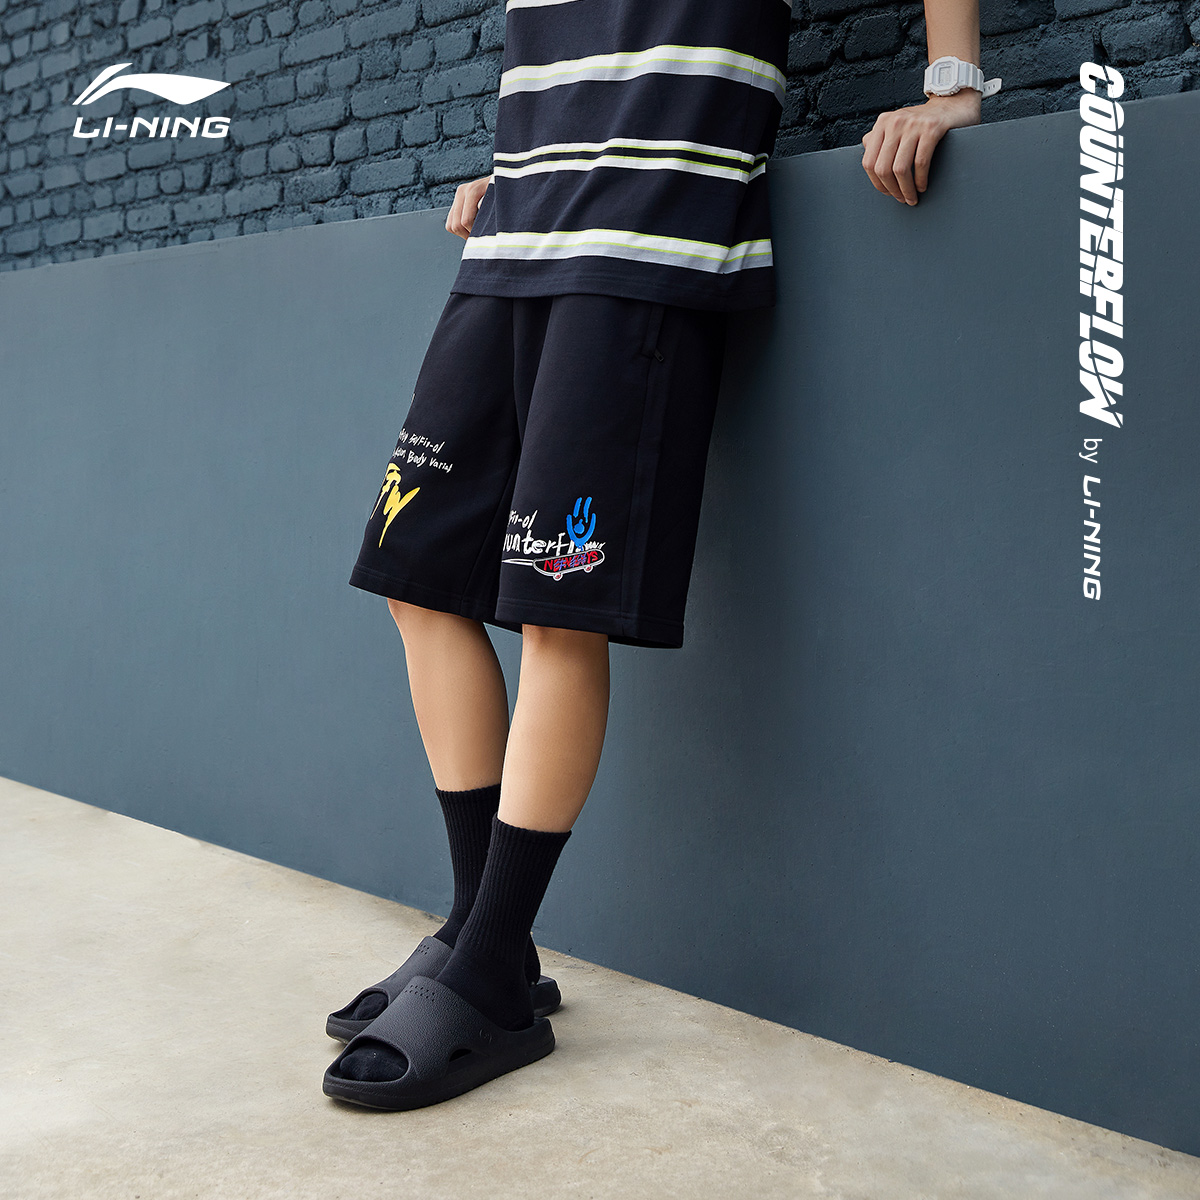 李寧CF牛掰短褲運動時尚系列藍色針織大碼運動褲